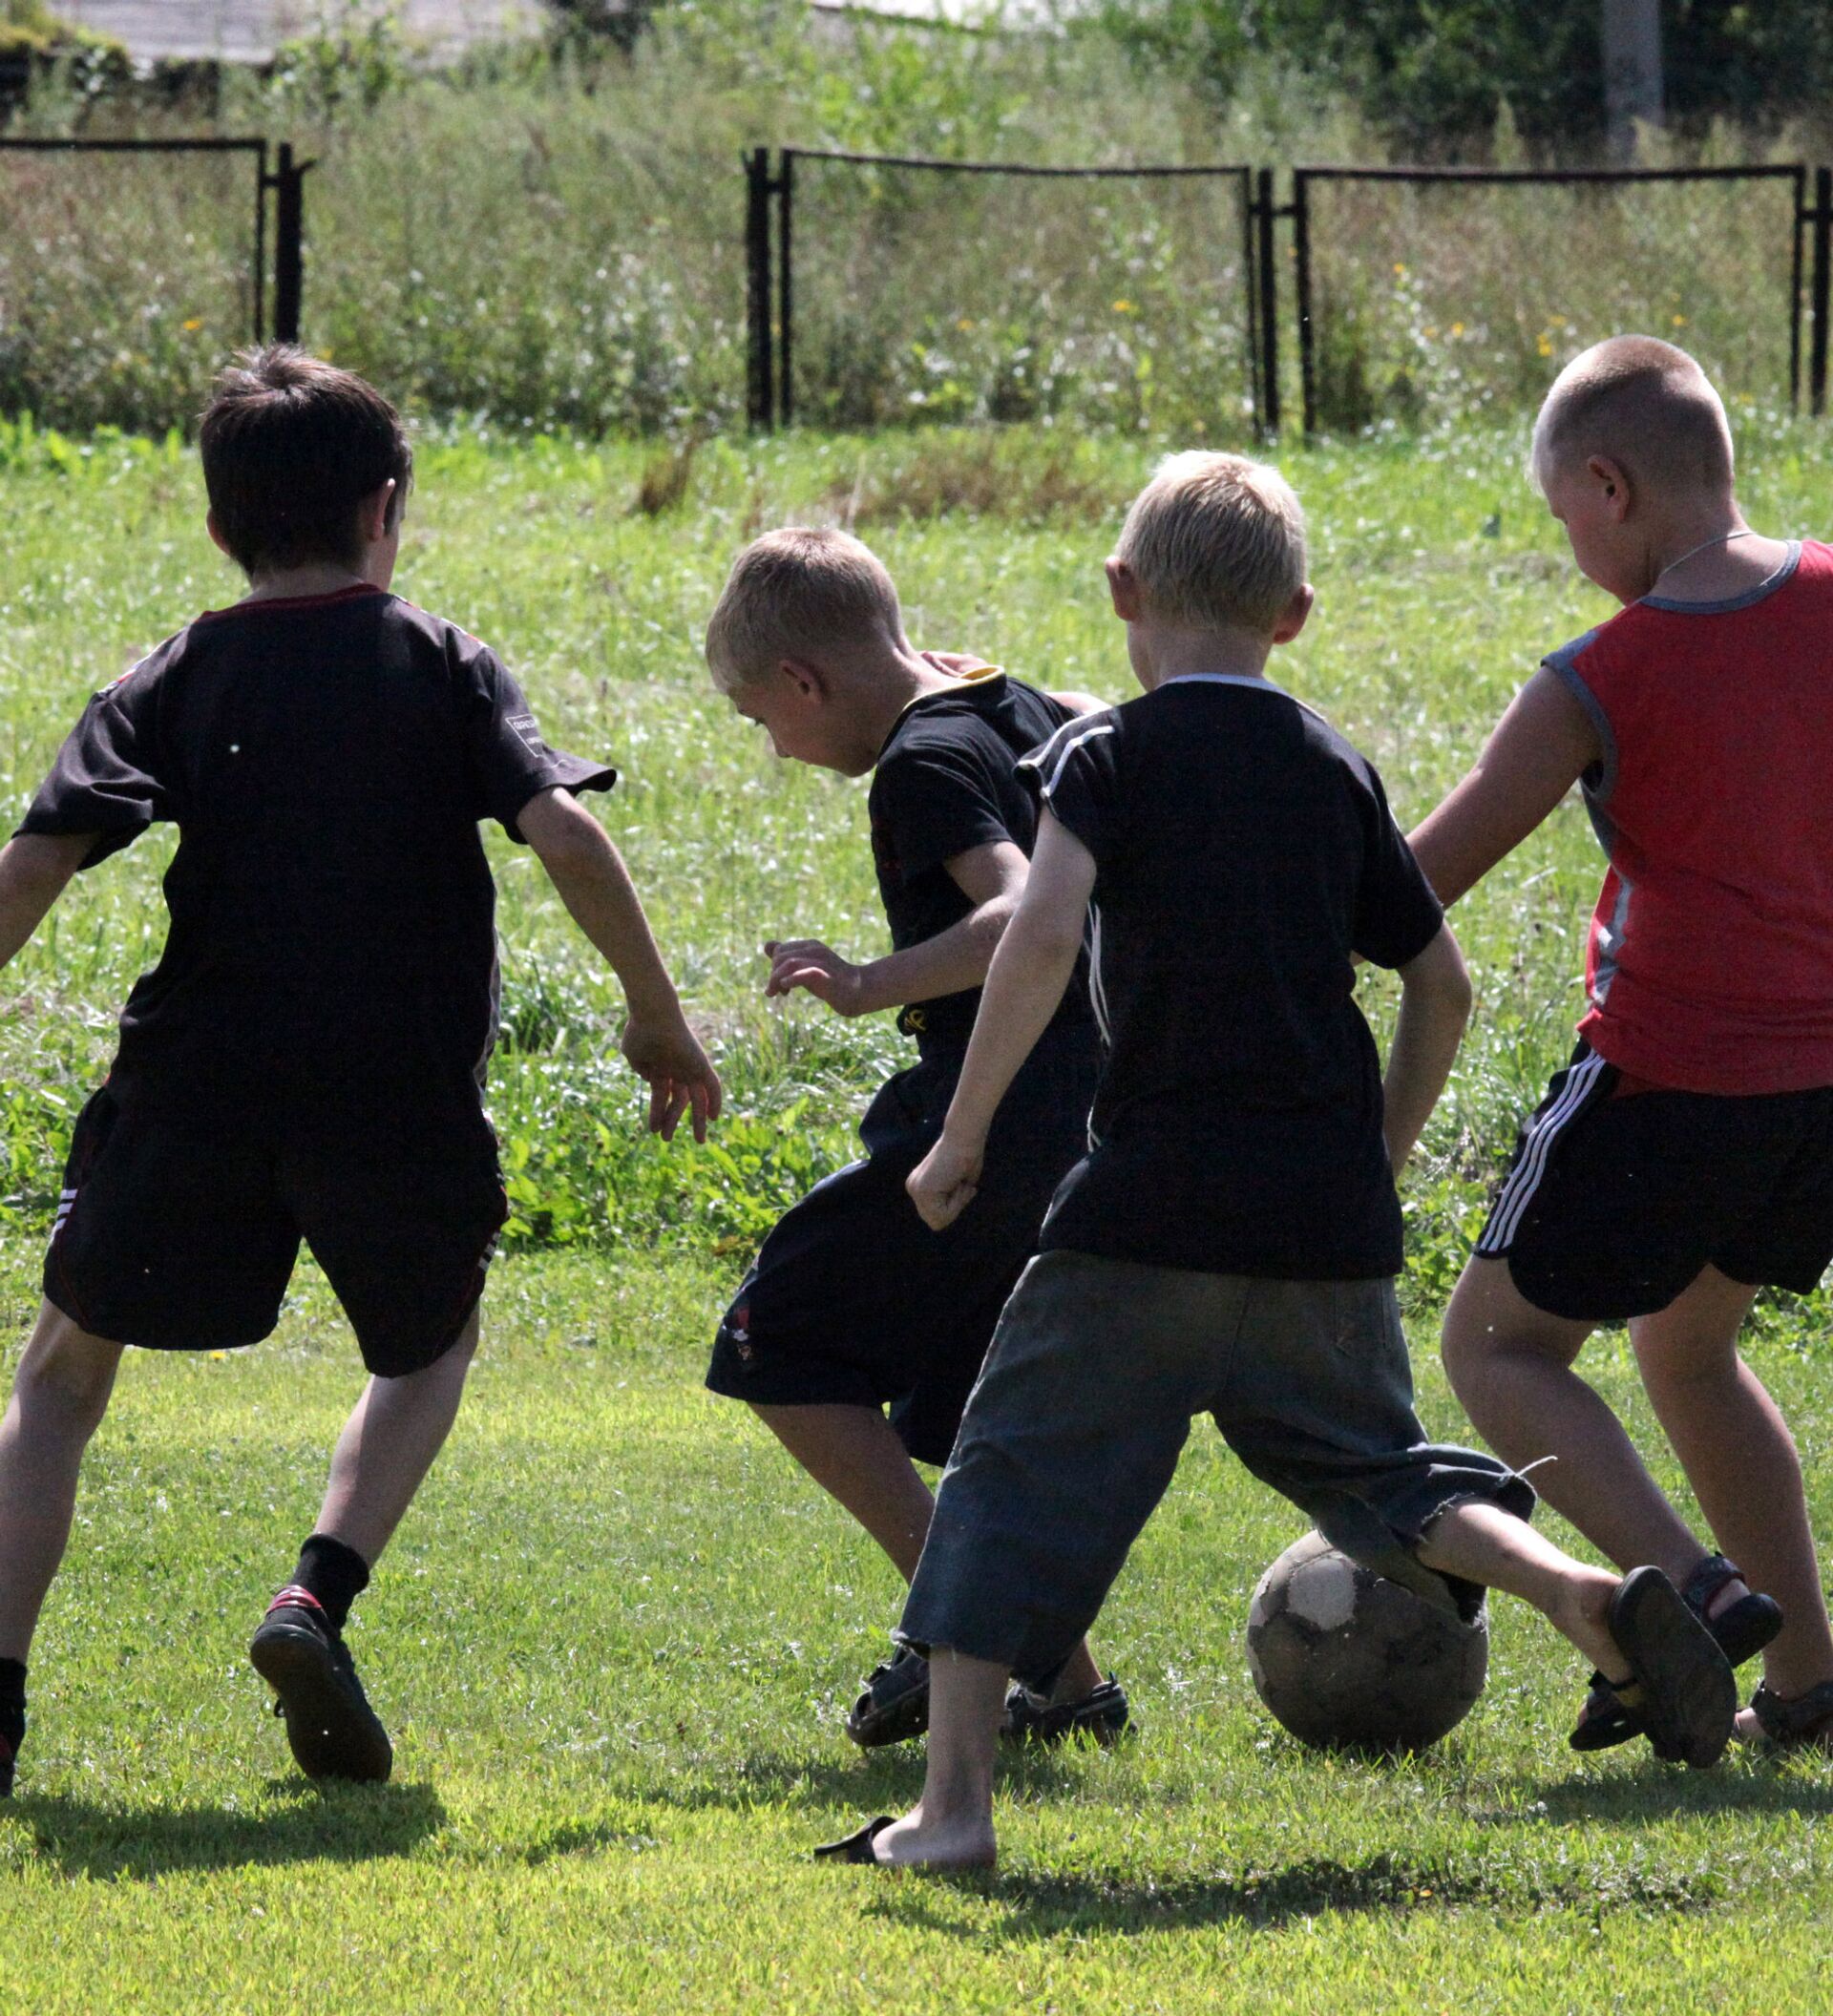 Дети бегают во дворе. Дети играют в футбол. Дети во дворе. Футбол во дворе. Дети играющие в футбол во дворе.